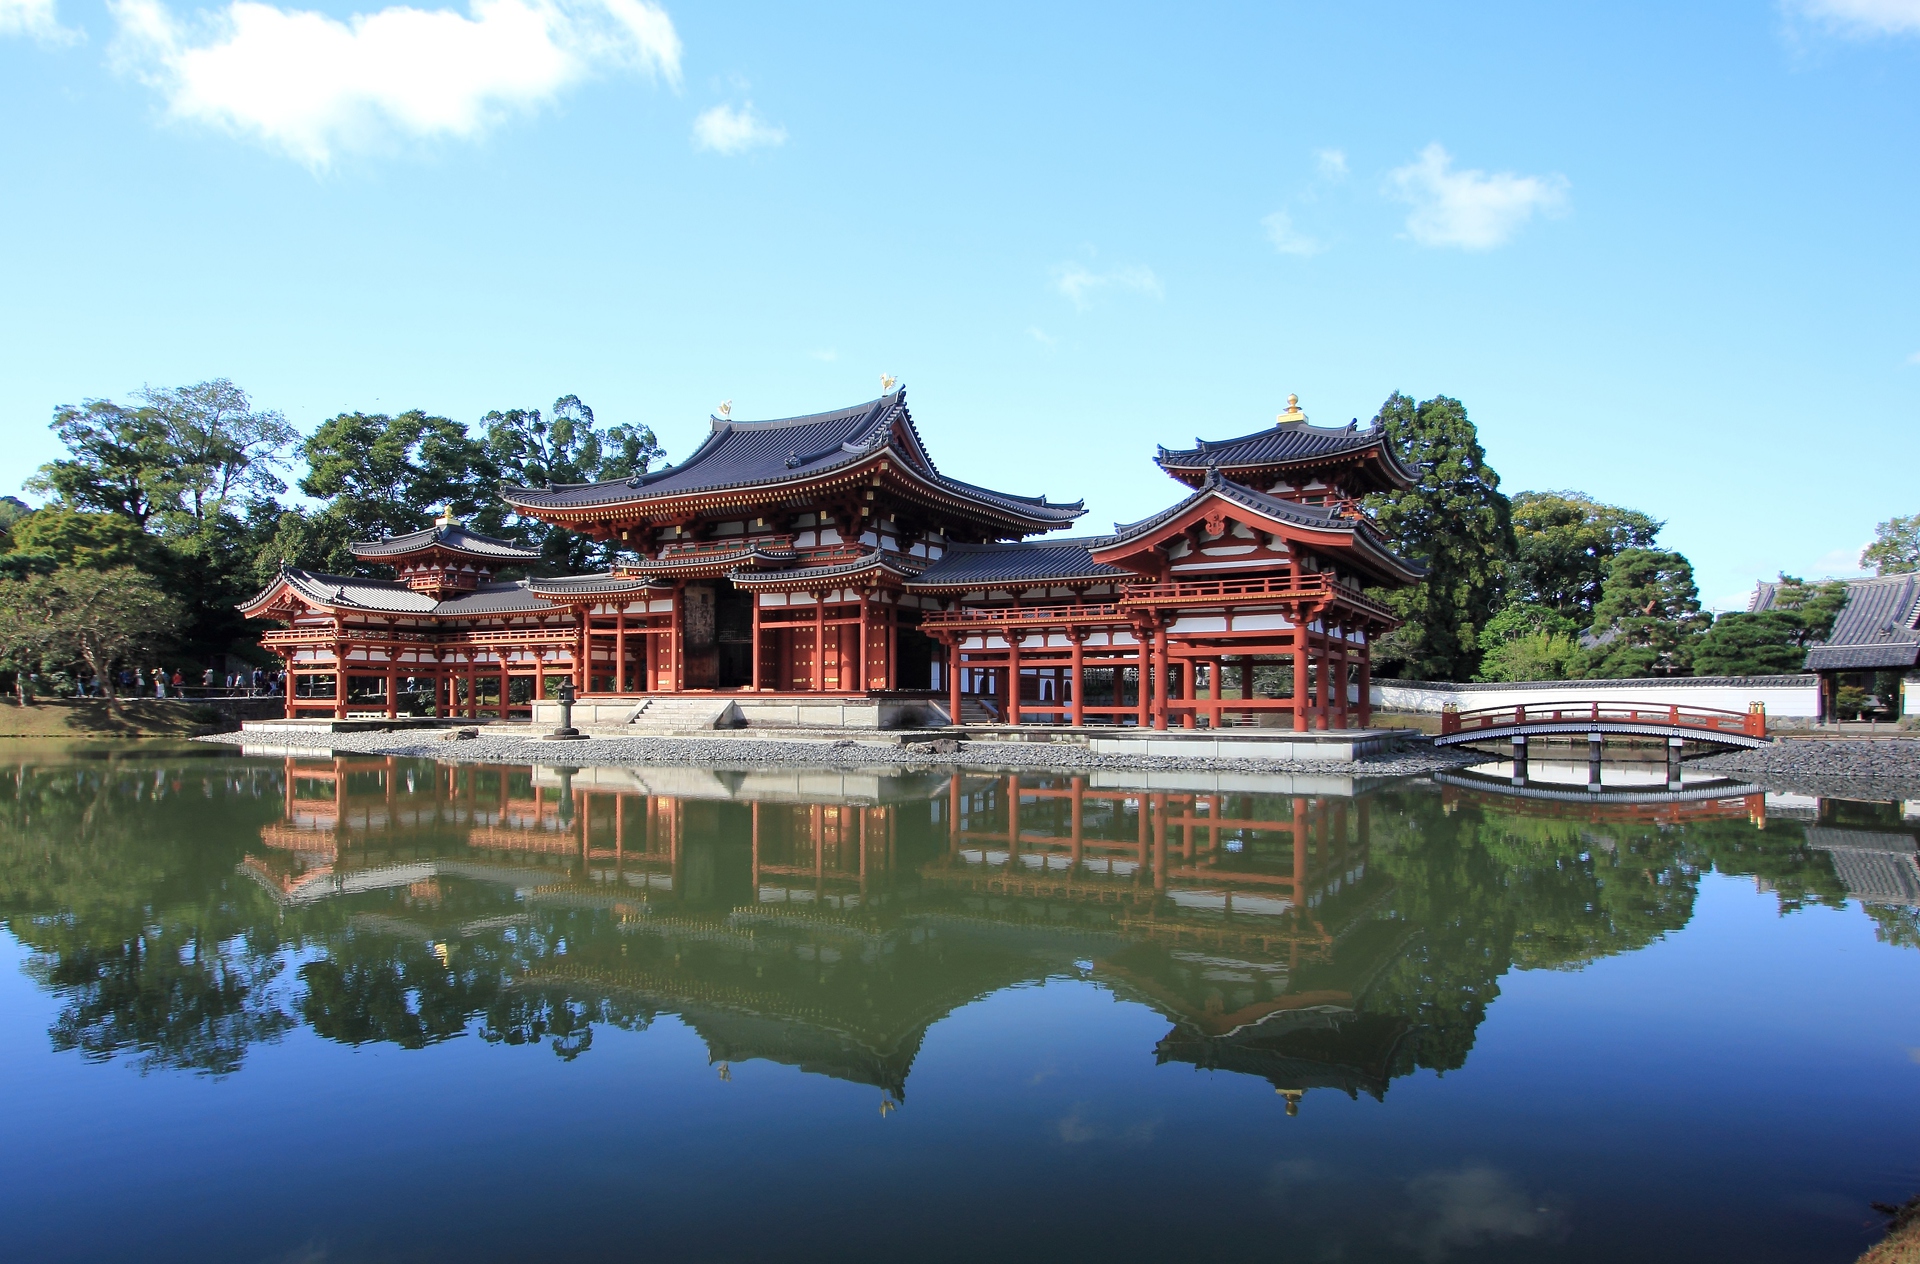 日本の風景 湖面に映る平等院鳳凰堂 壁紙19x1264 壁紙館